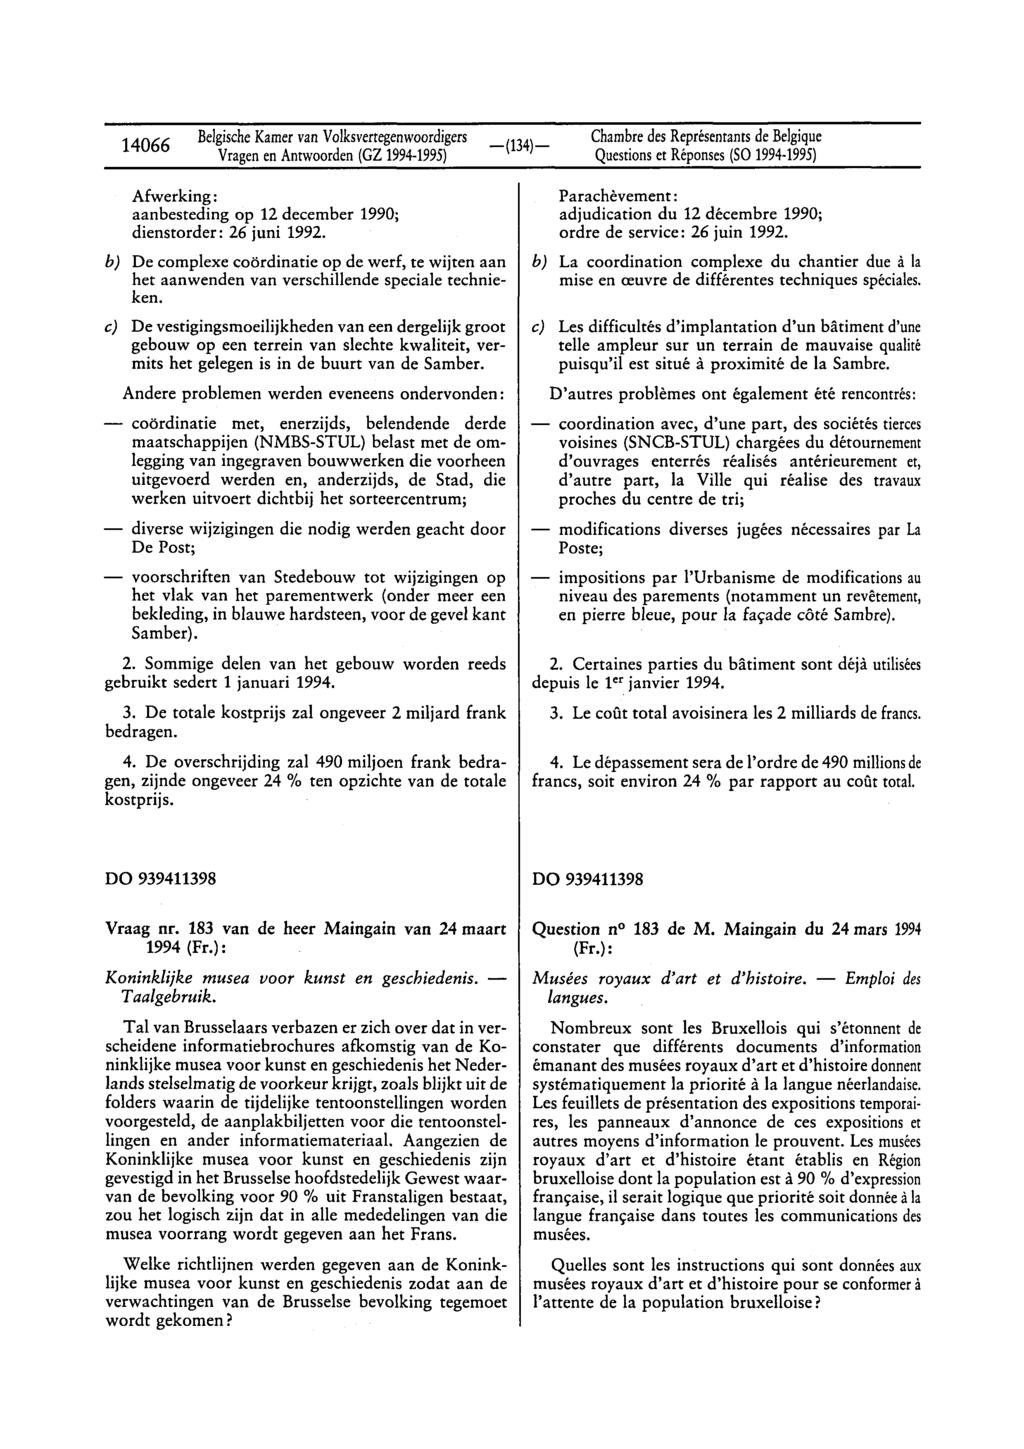 14066 BelgischeKamervan Volksvertegenwoordigers Questionset Réponses(SO 1994-1995) Afwerking: aanbesteding op 12 december 1990; dienstorder: 26 juni 1992.